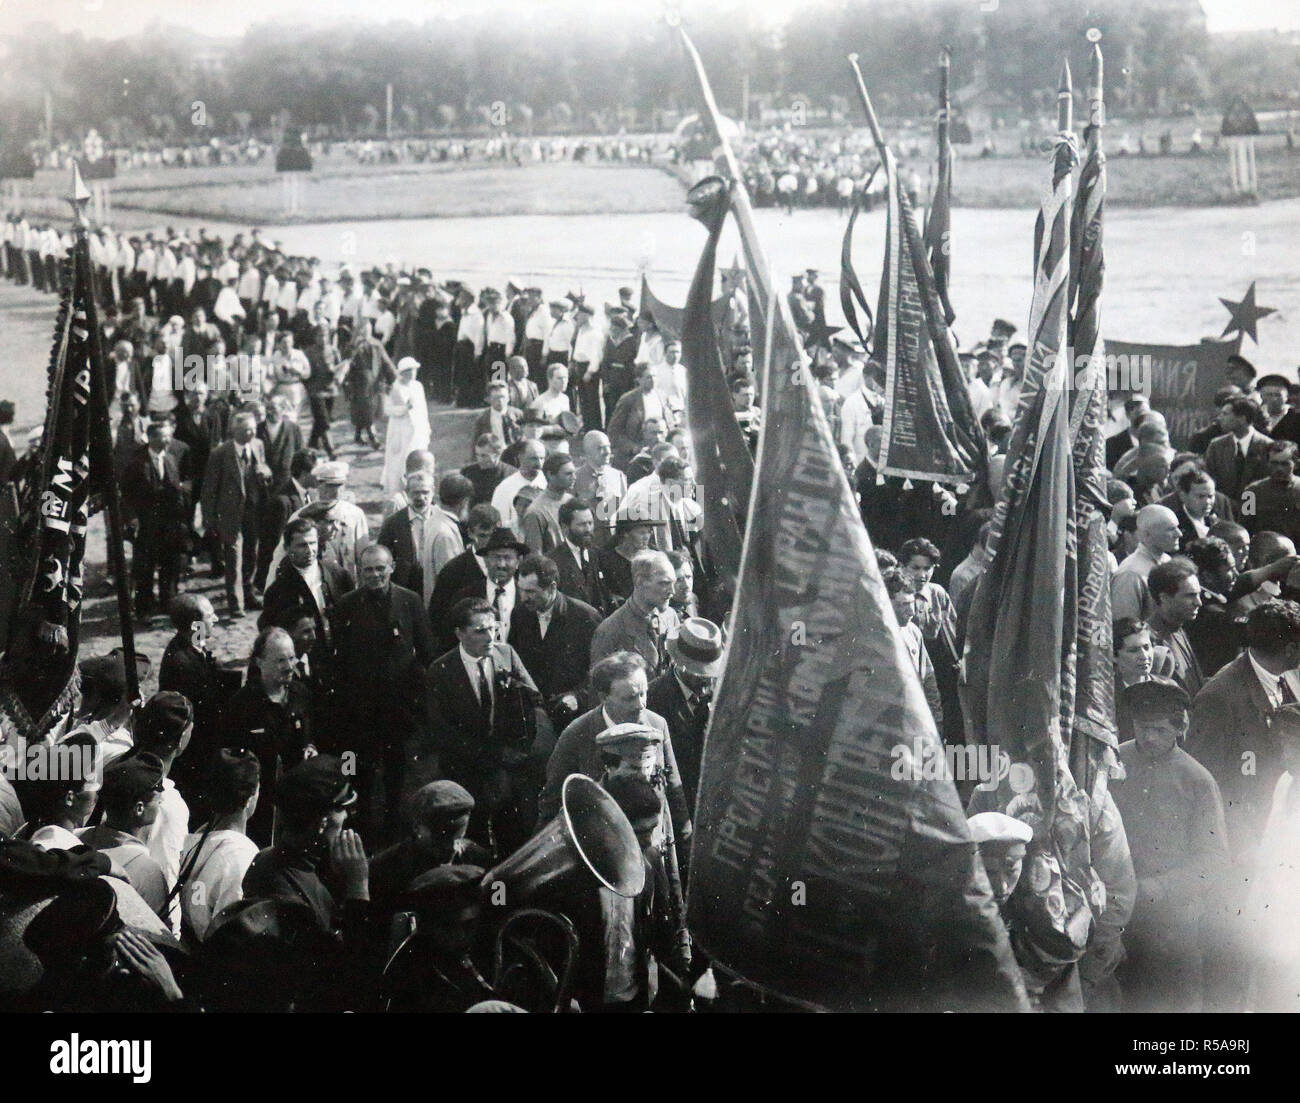 Puede haber sido la procesión que tuvo lugar al comienzo del II Congreso de la III Internacional Comunista, organizada para rendir homenaje a las víctimas de la Revolución de Febrero, enterrados en esta zona. Uno reconoce Nikolaï Bujarin (1888-1938) a la izquierda. Foto de stock